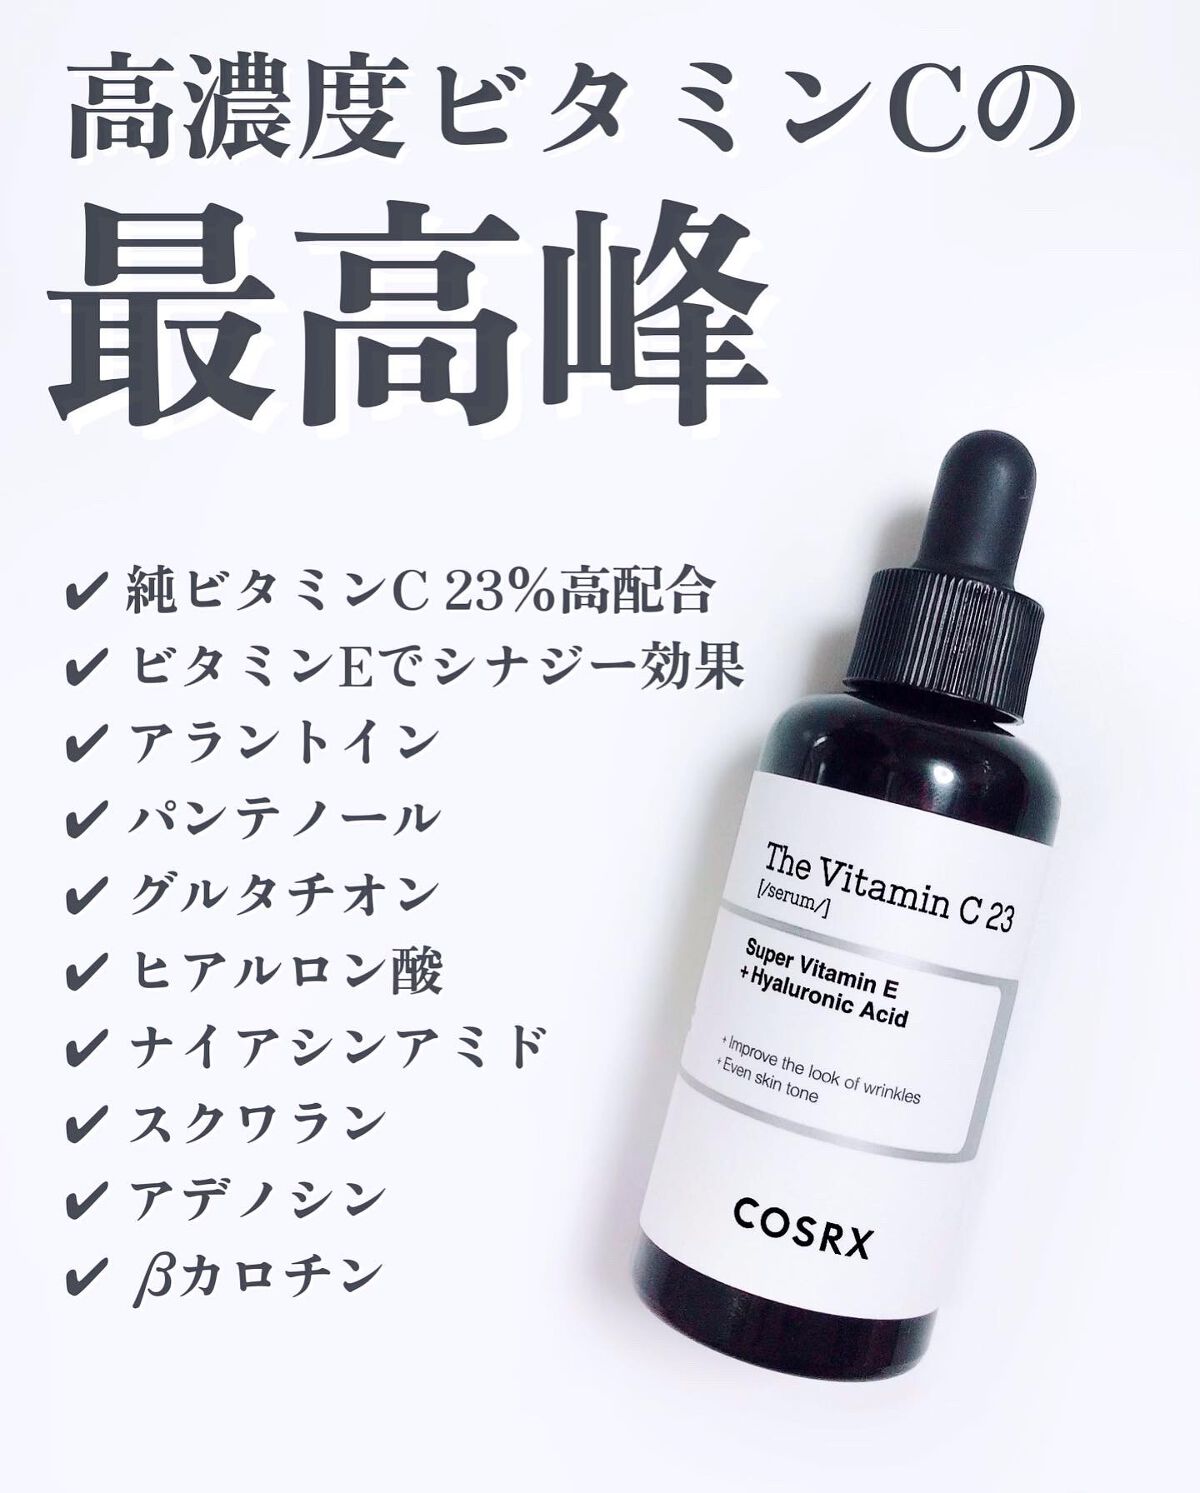 COSRX RX ザ・ビタミンC23セラム - 美容液